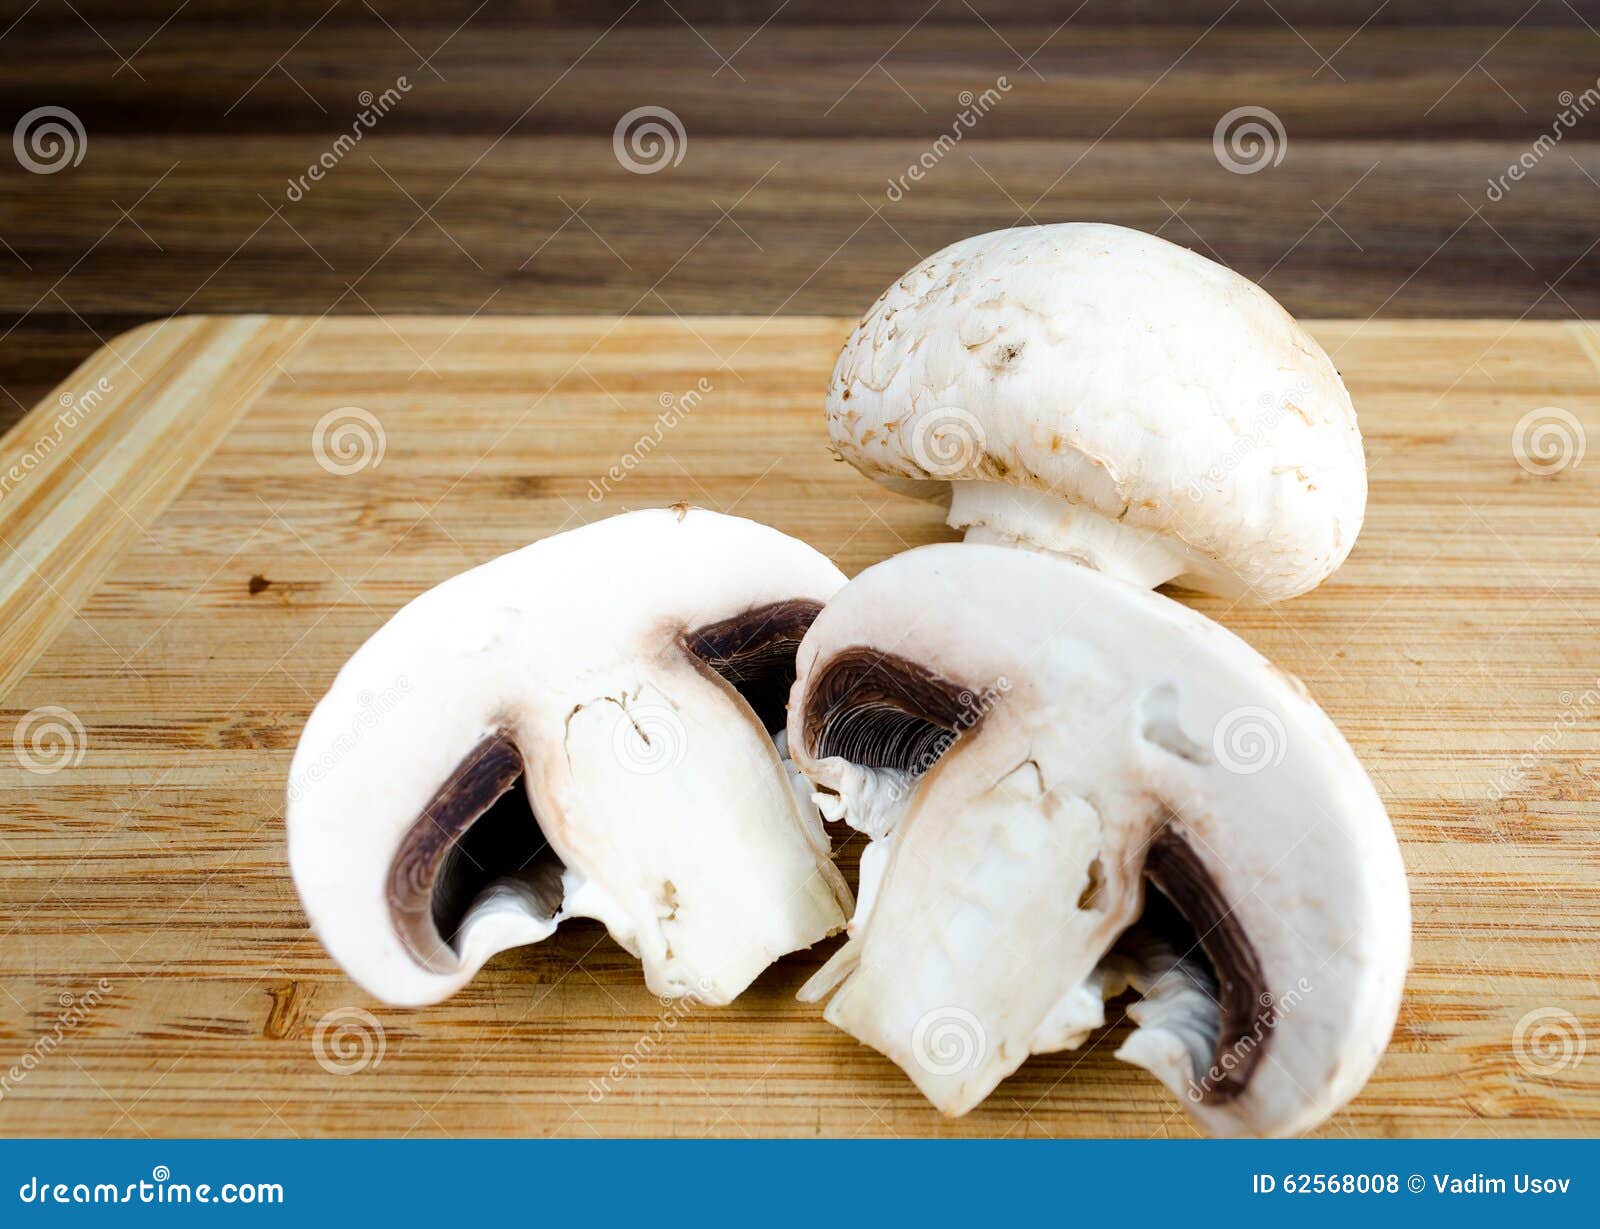 切木板上的蘑菇混合顶视图 库存图片. 图片 包括有 鲜美, 食物, 不同, 蘑菇, 纹理, 特写镜头, 问题的 - 260063683